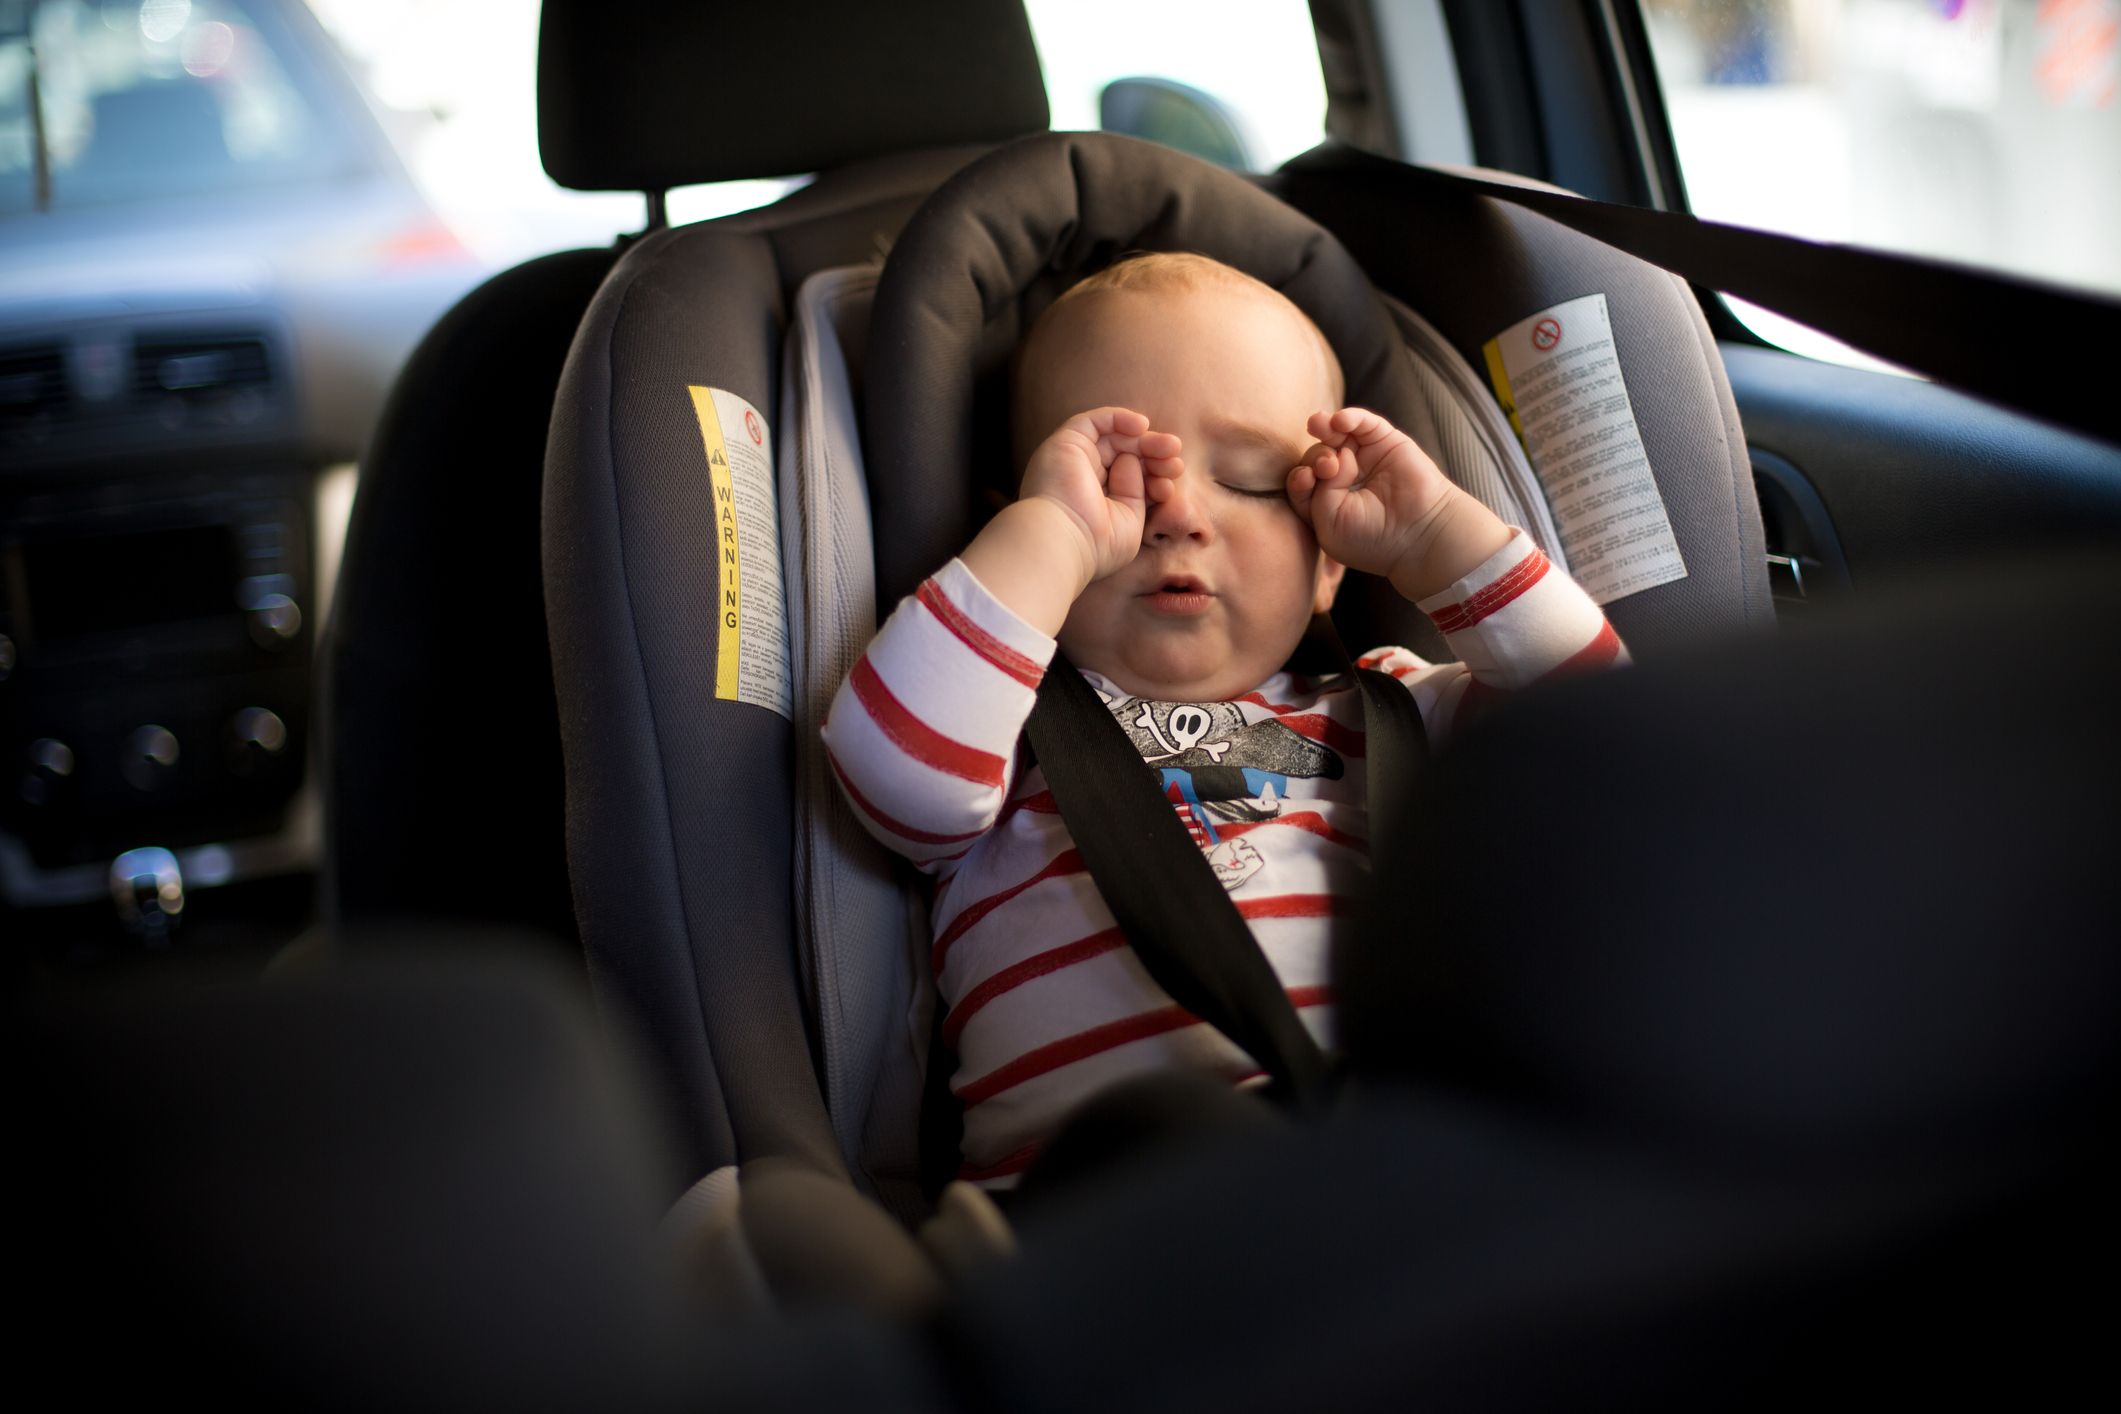 Zubehör für Autositze Babyschalen